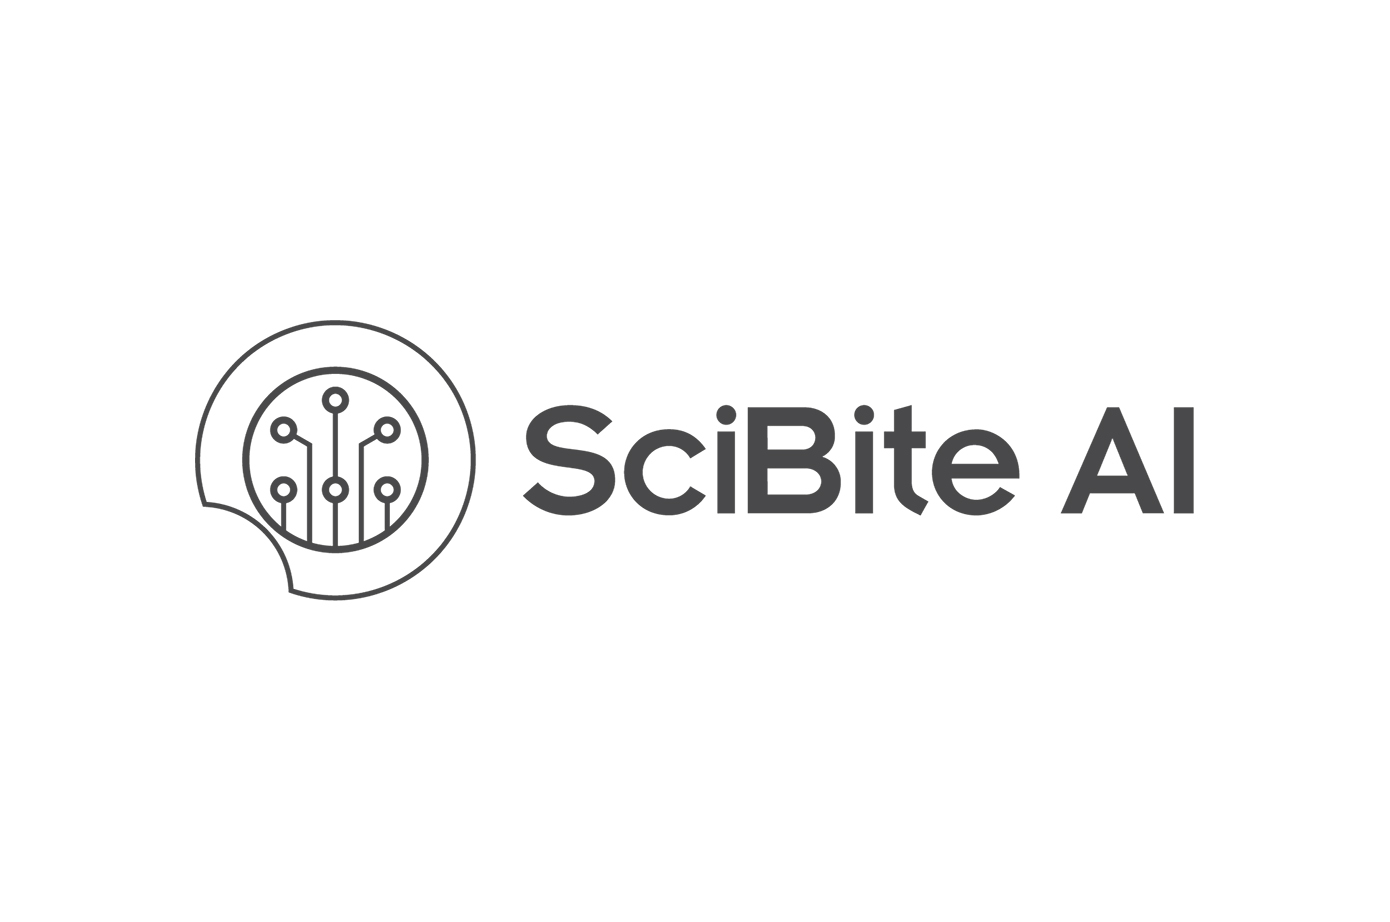 SciBite AI